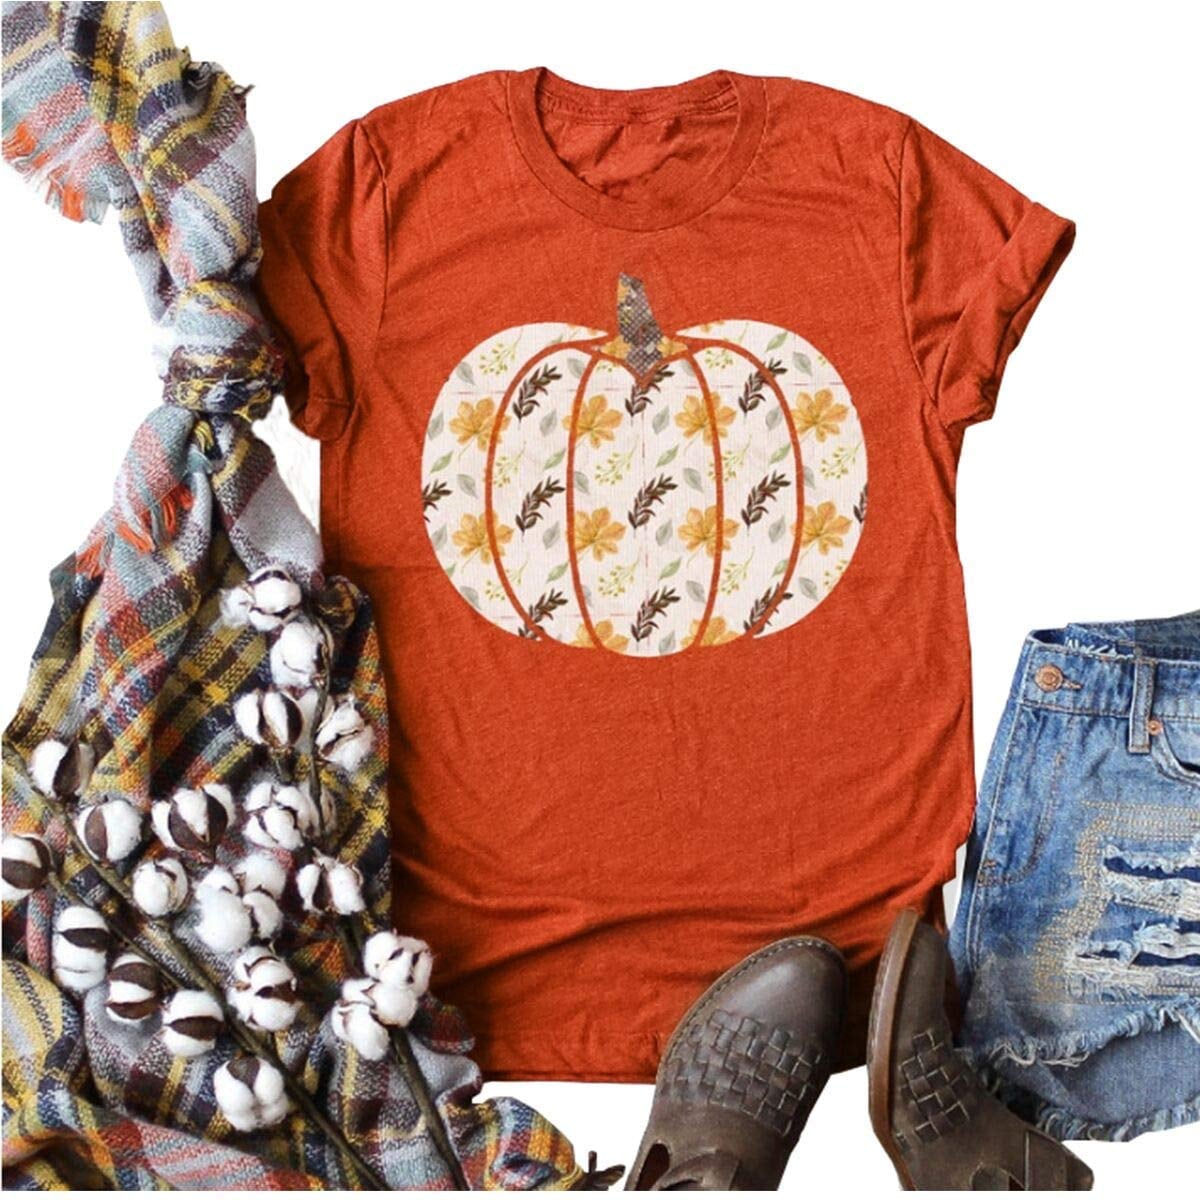 Pumpkin Shirts for Women Funny Halloween Clothing Fall T-Shirts Top